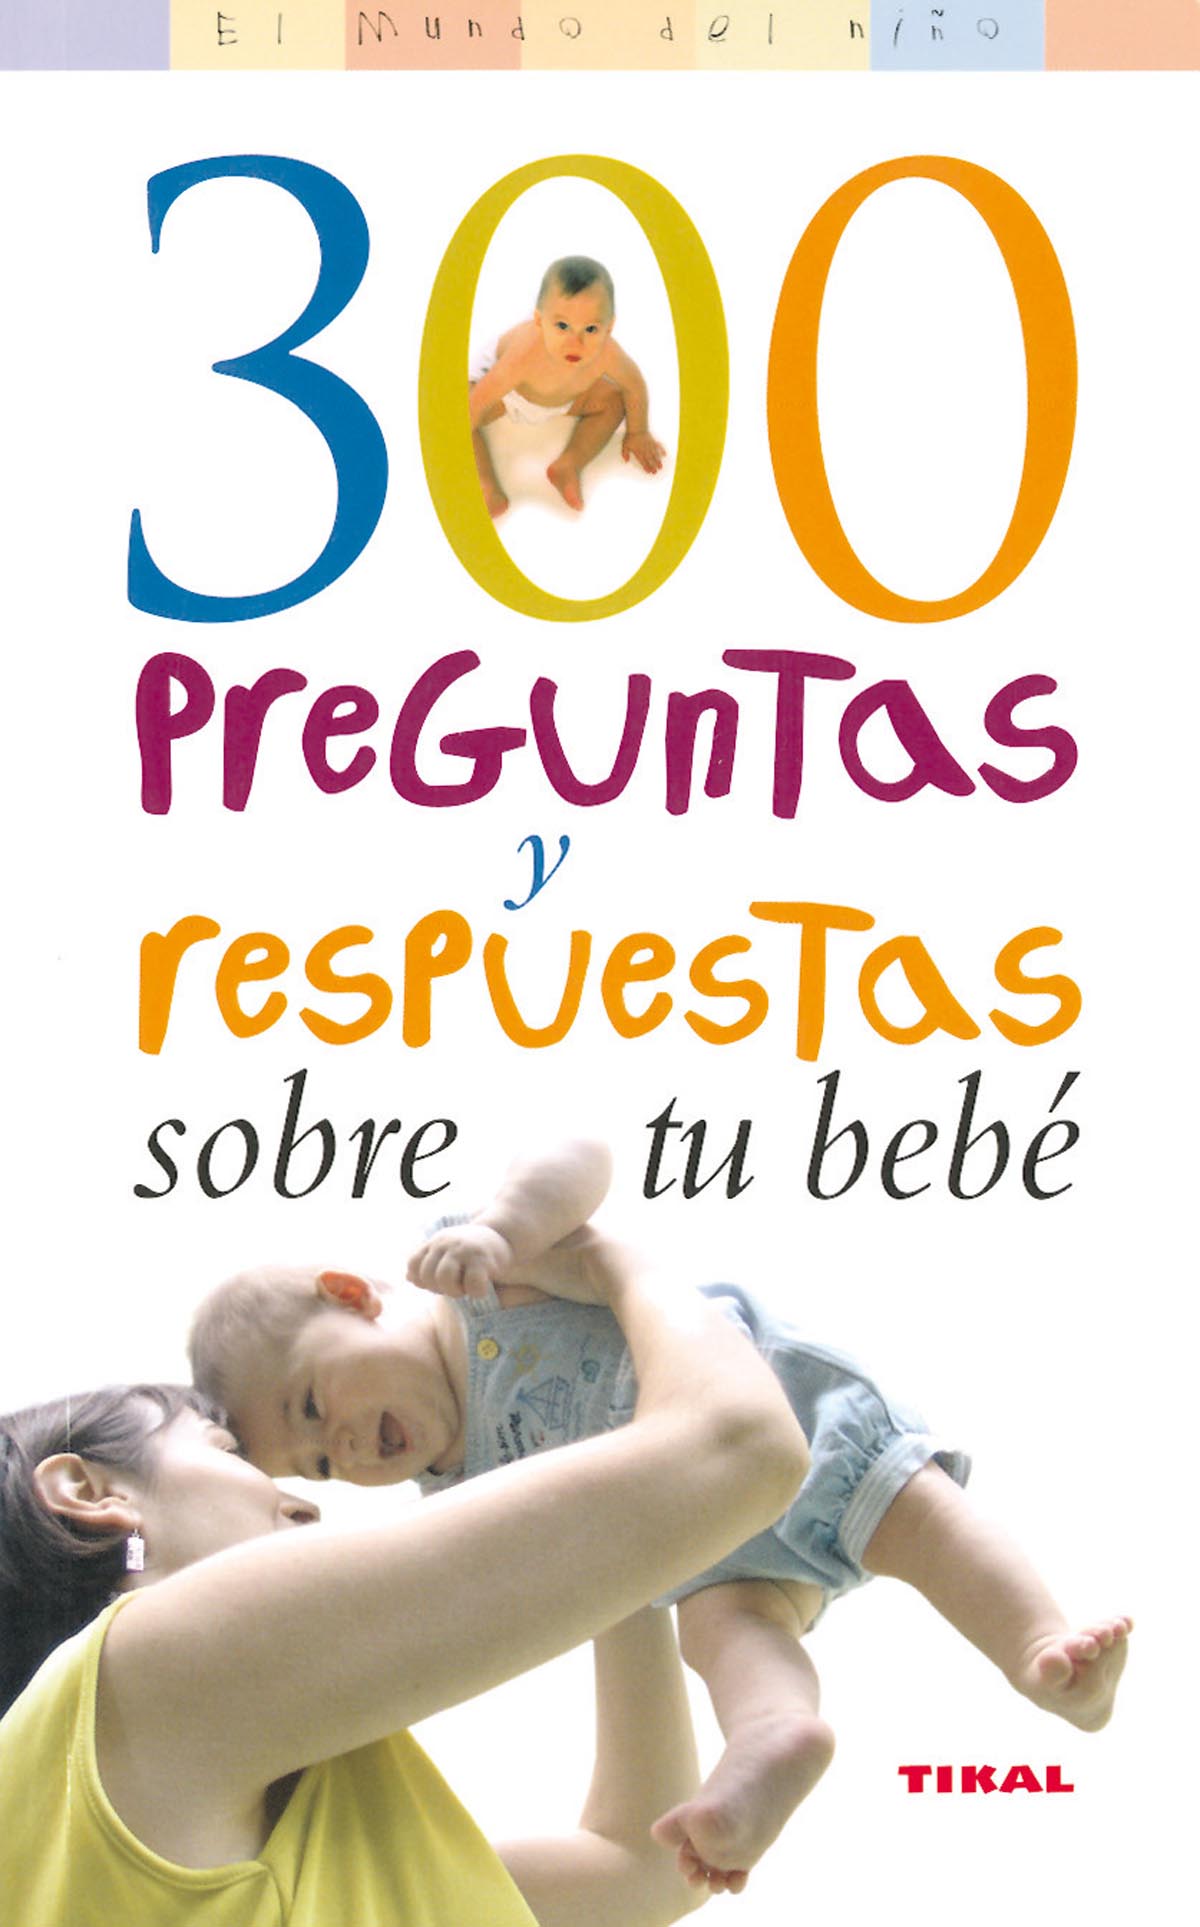 300 preguntas y respuestas sobre tu bebé